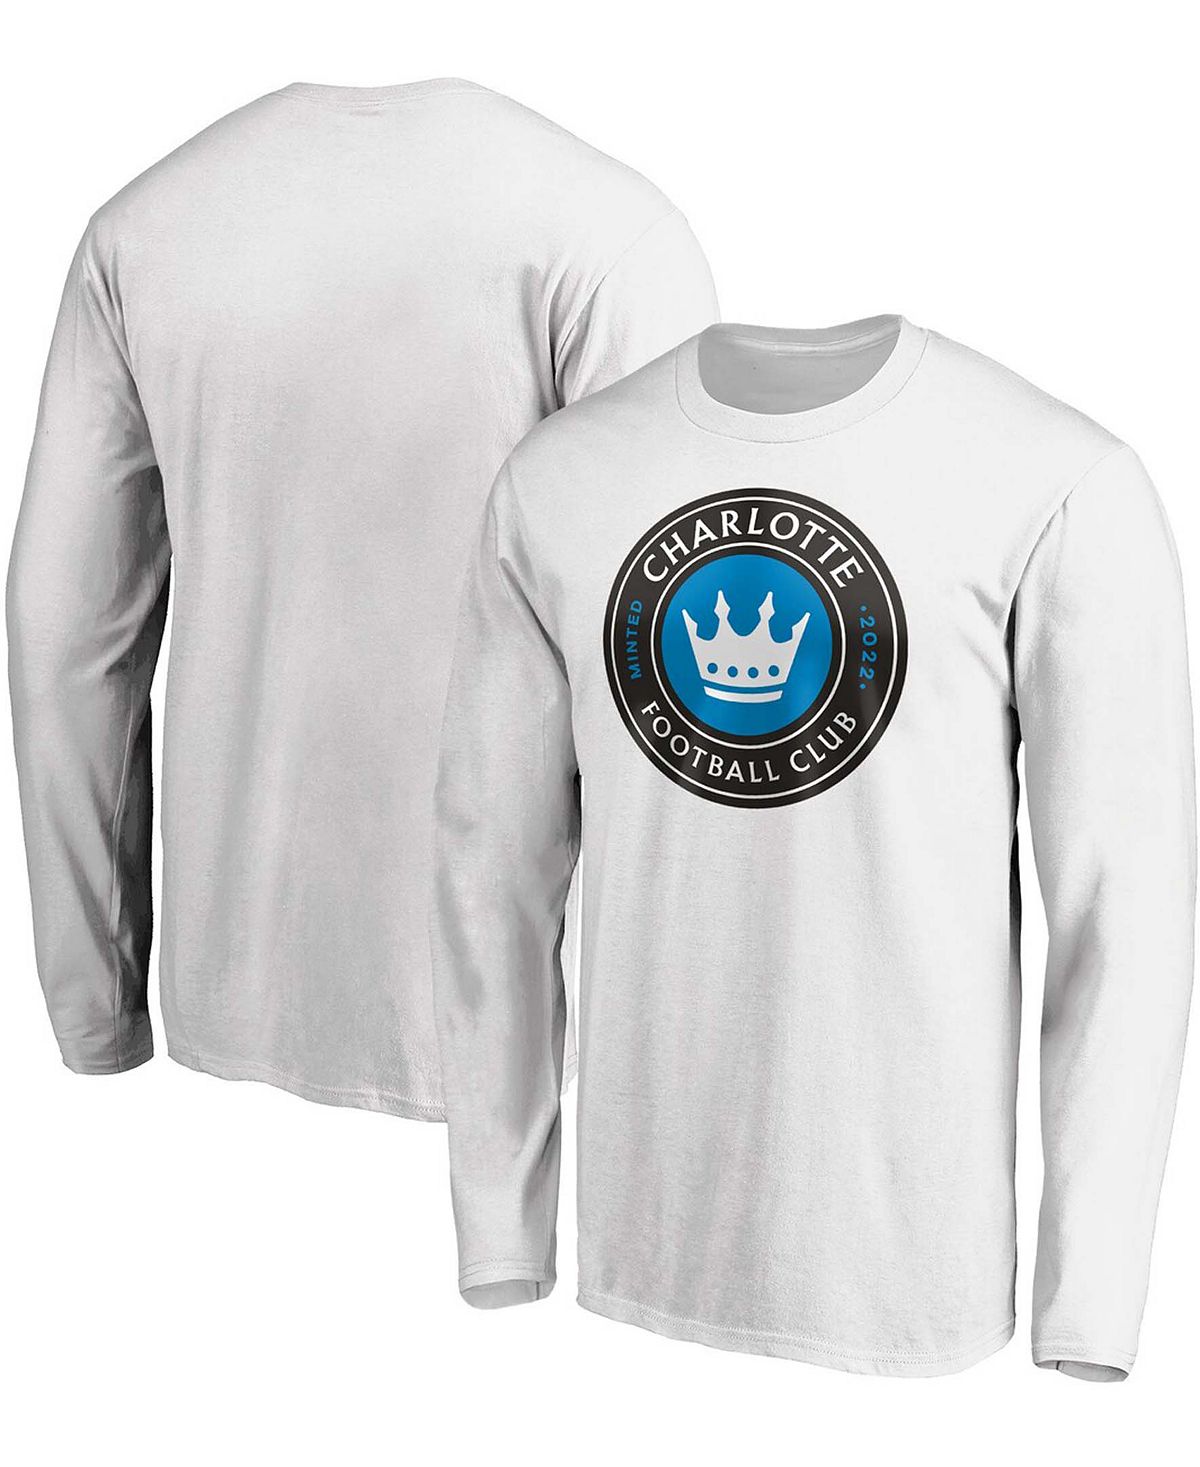 Мужская белая футболка с длинным рукавом и логотипом Charlotte FC Primary Fanatics